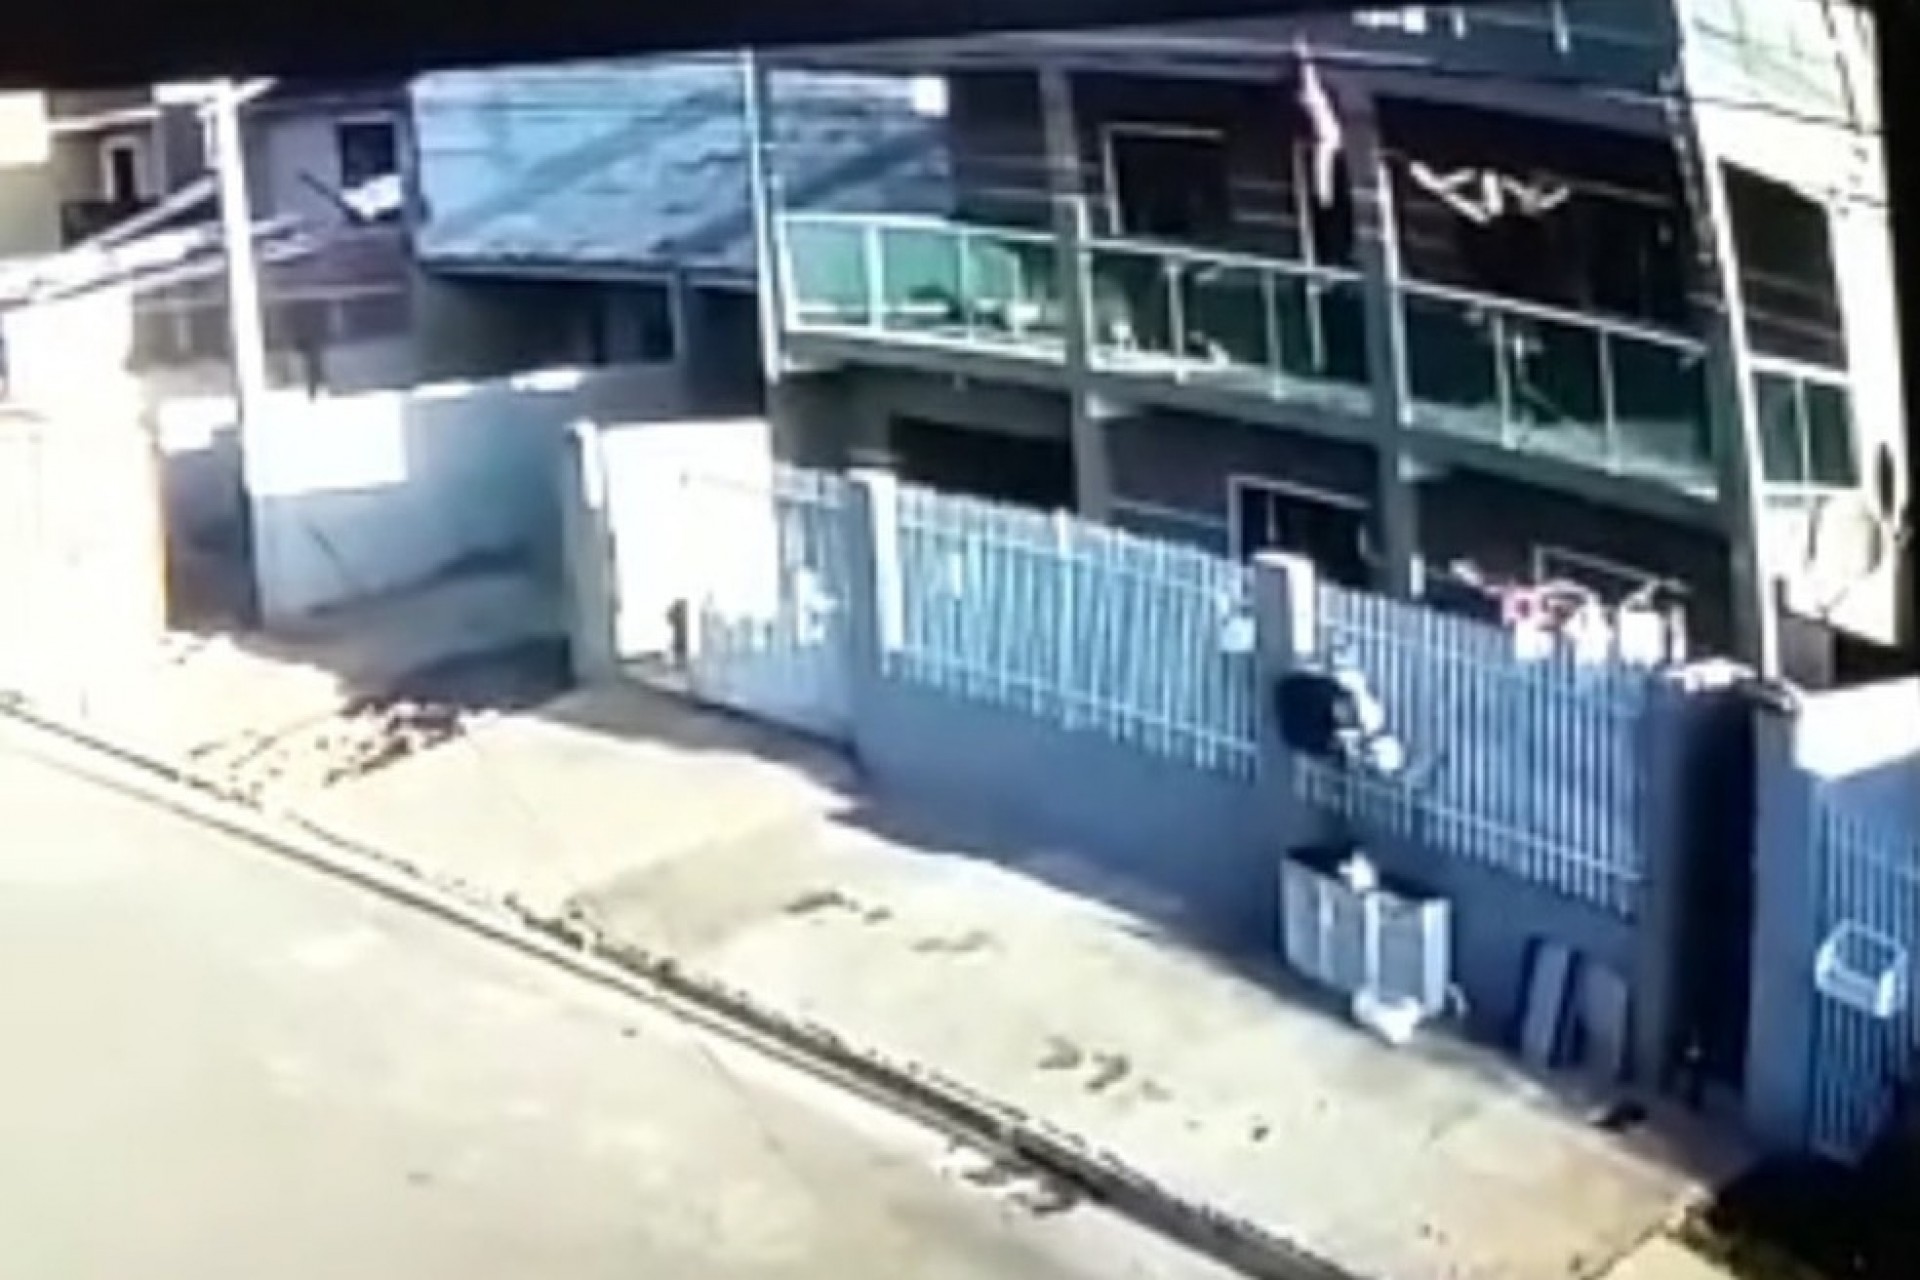 Vizinho salva criança de 2 anos que caiu da sacada do 3º andar de prédio, no Paraná (VÍDEO)